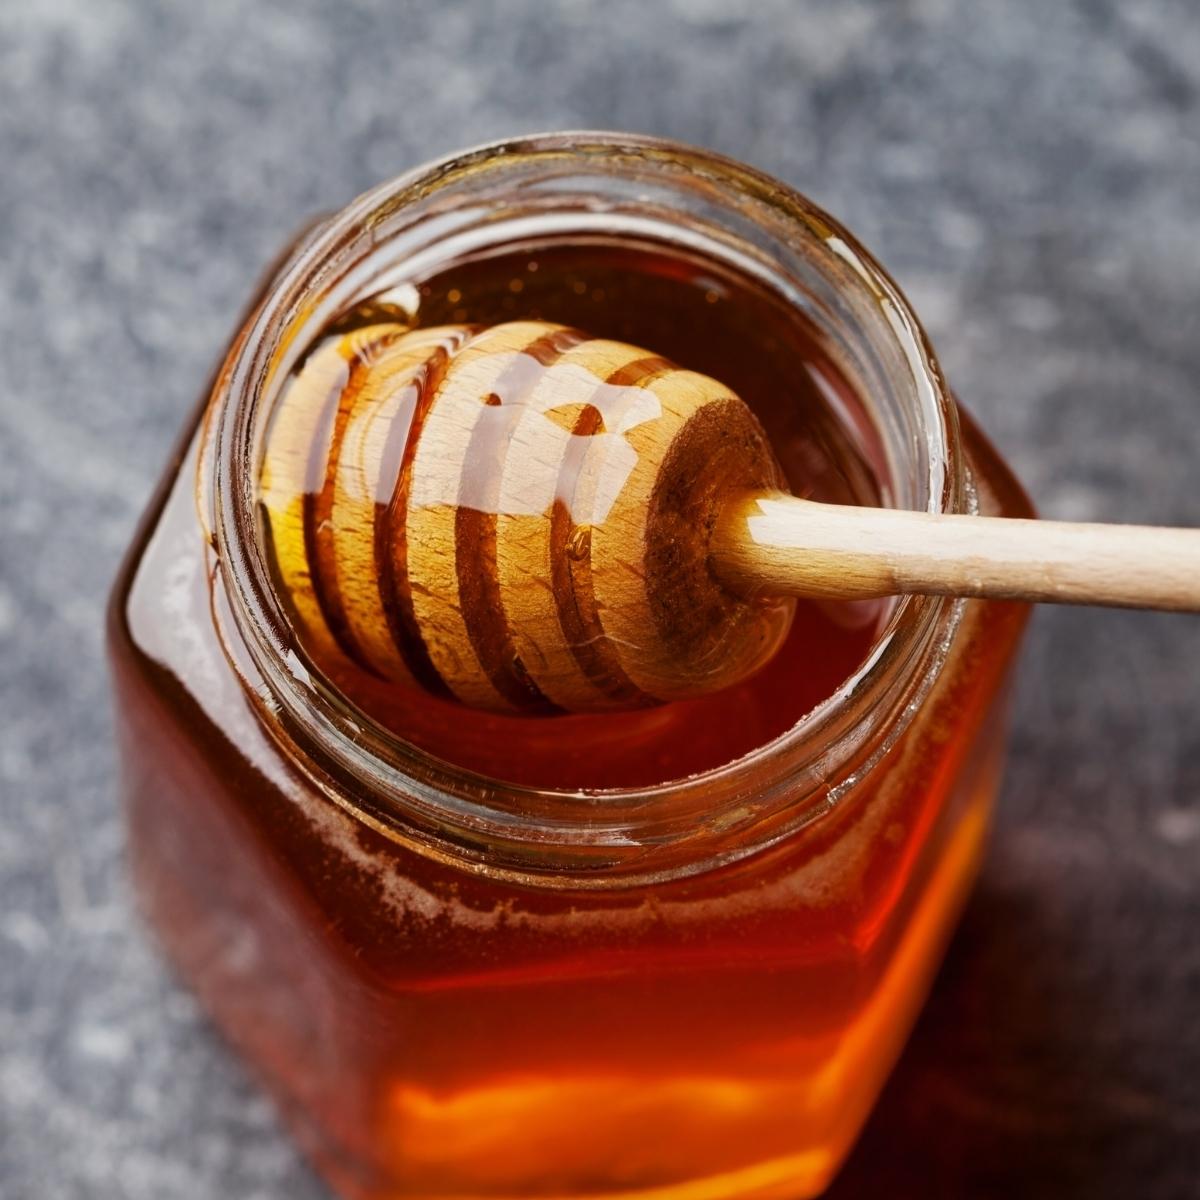 Honey Dripping in a Jar